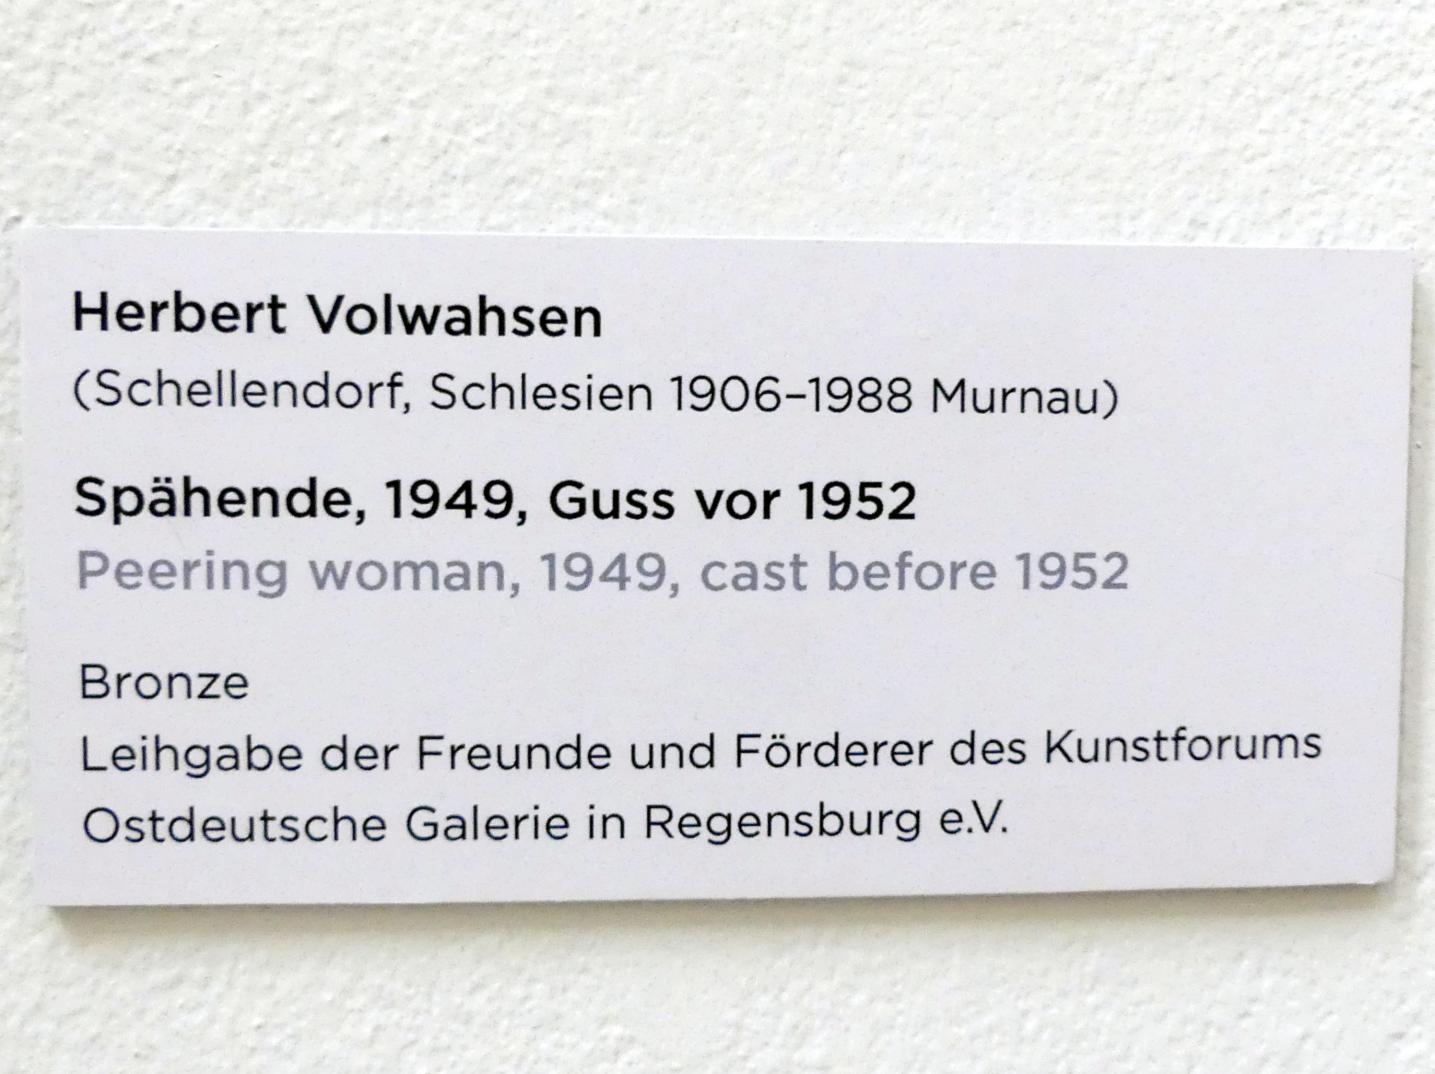 Herbert Volwahsen (1949–1965), Spähende, Regensburg, Ostdeutsche Galerie, Durchgang 1, 1949, Bild 3/3